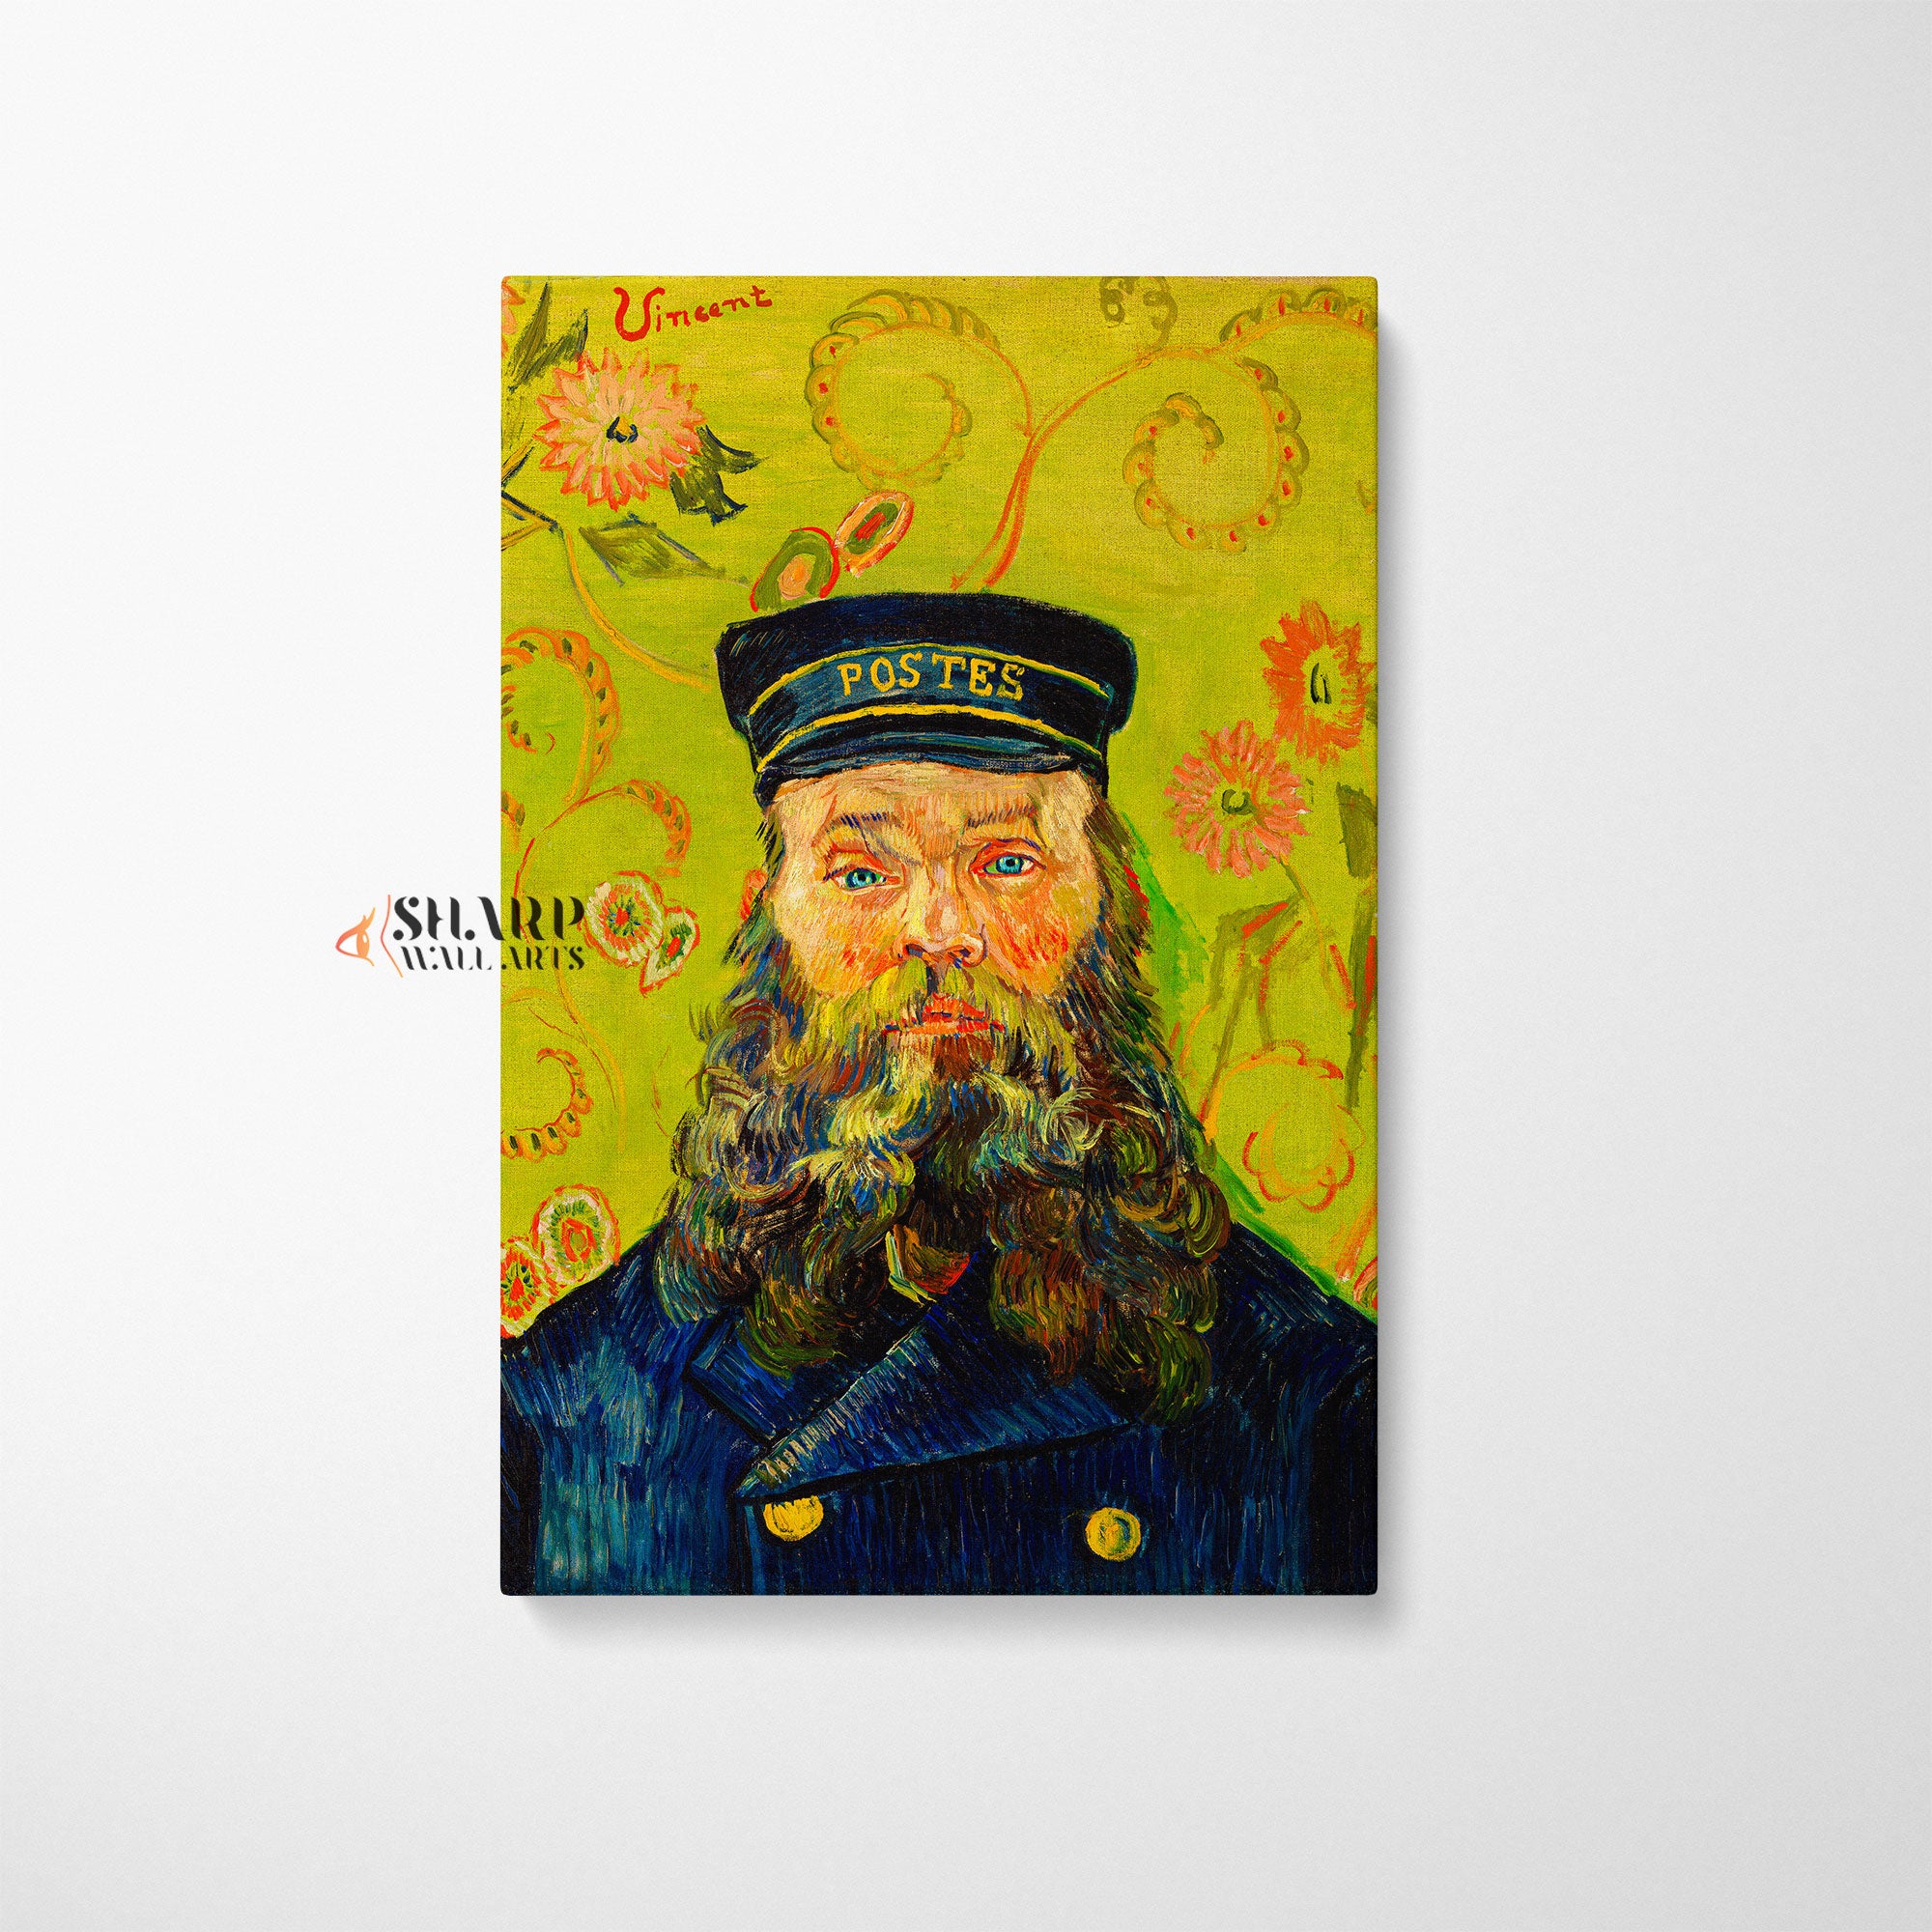 Vincent van Gogh Postman Canvas Wall Art